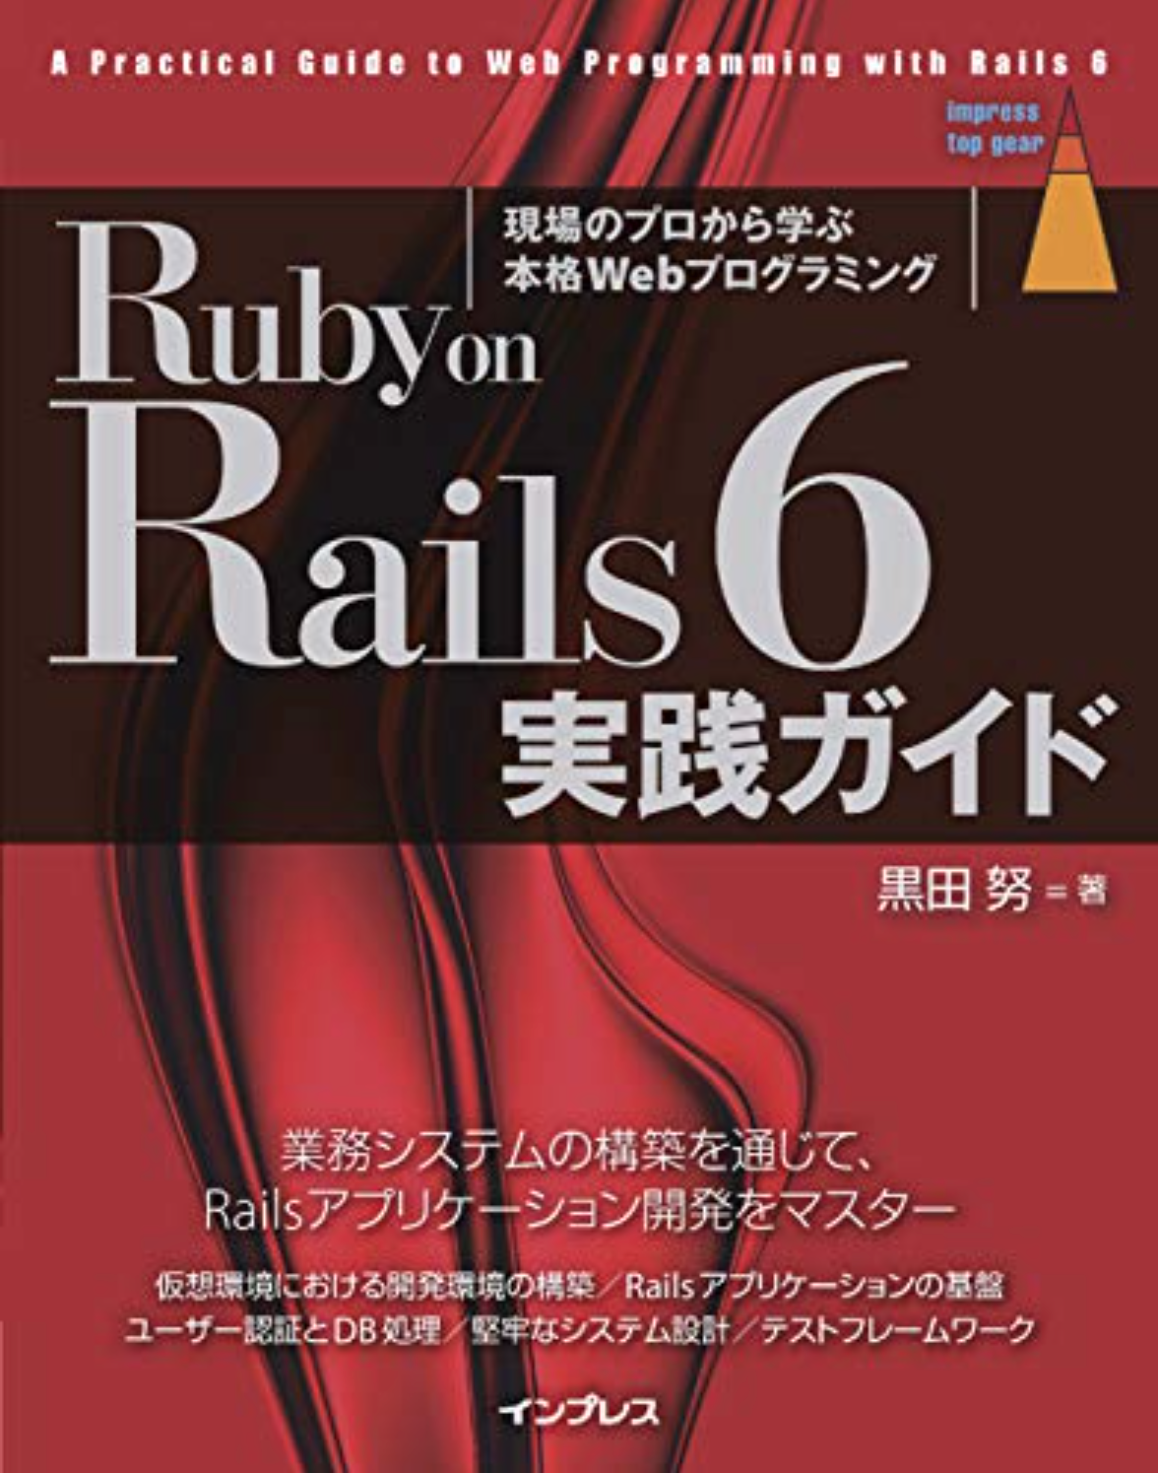 Ruby on Rails6実践ガイドの表紙